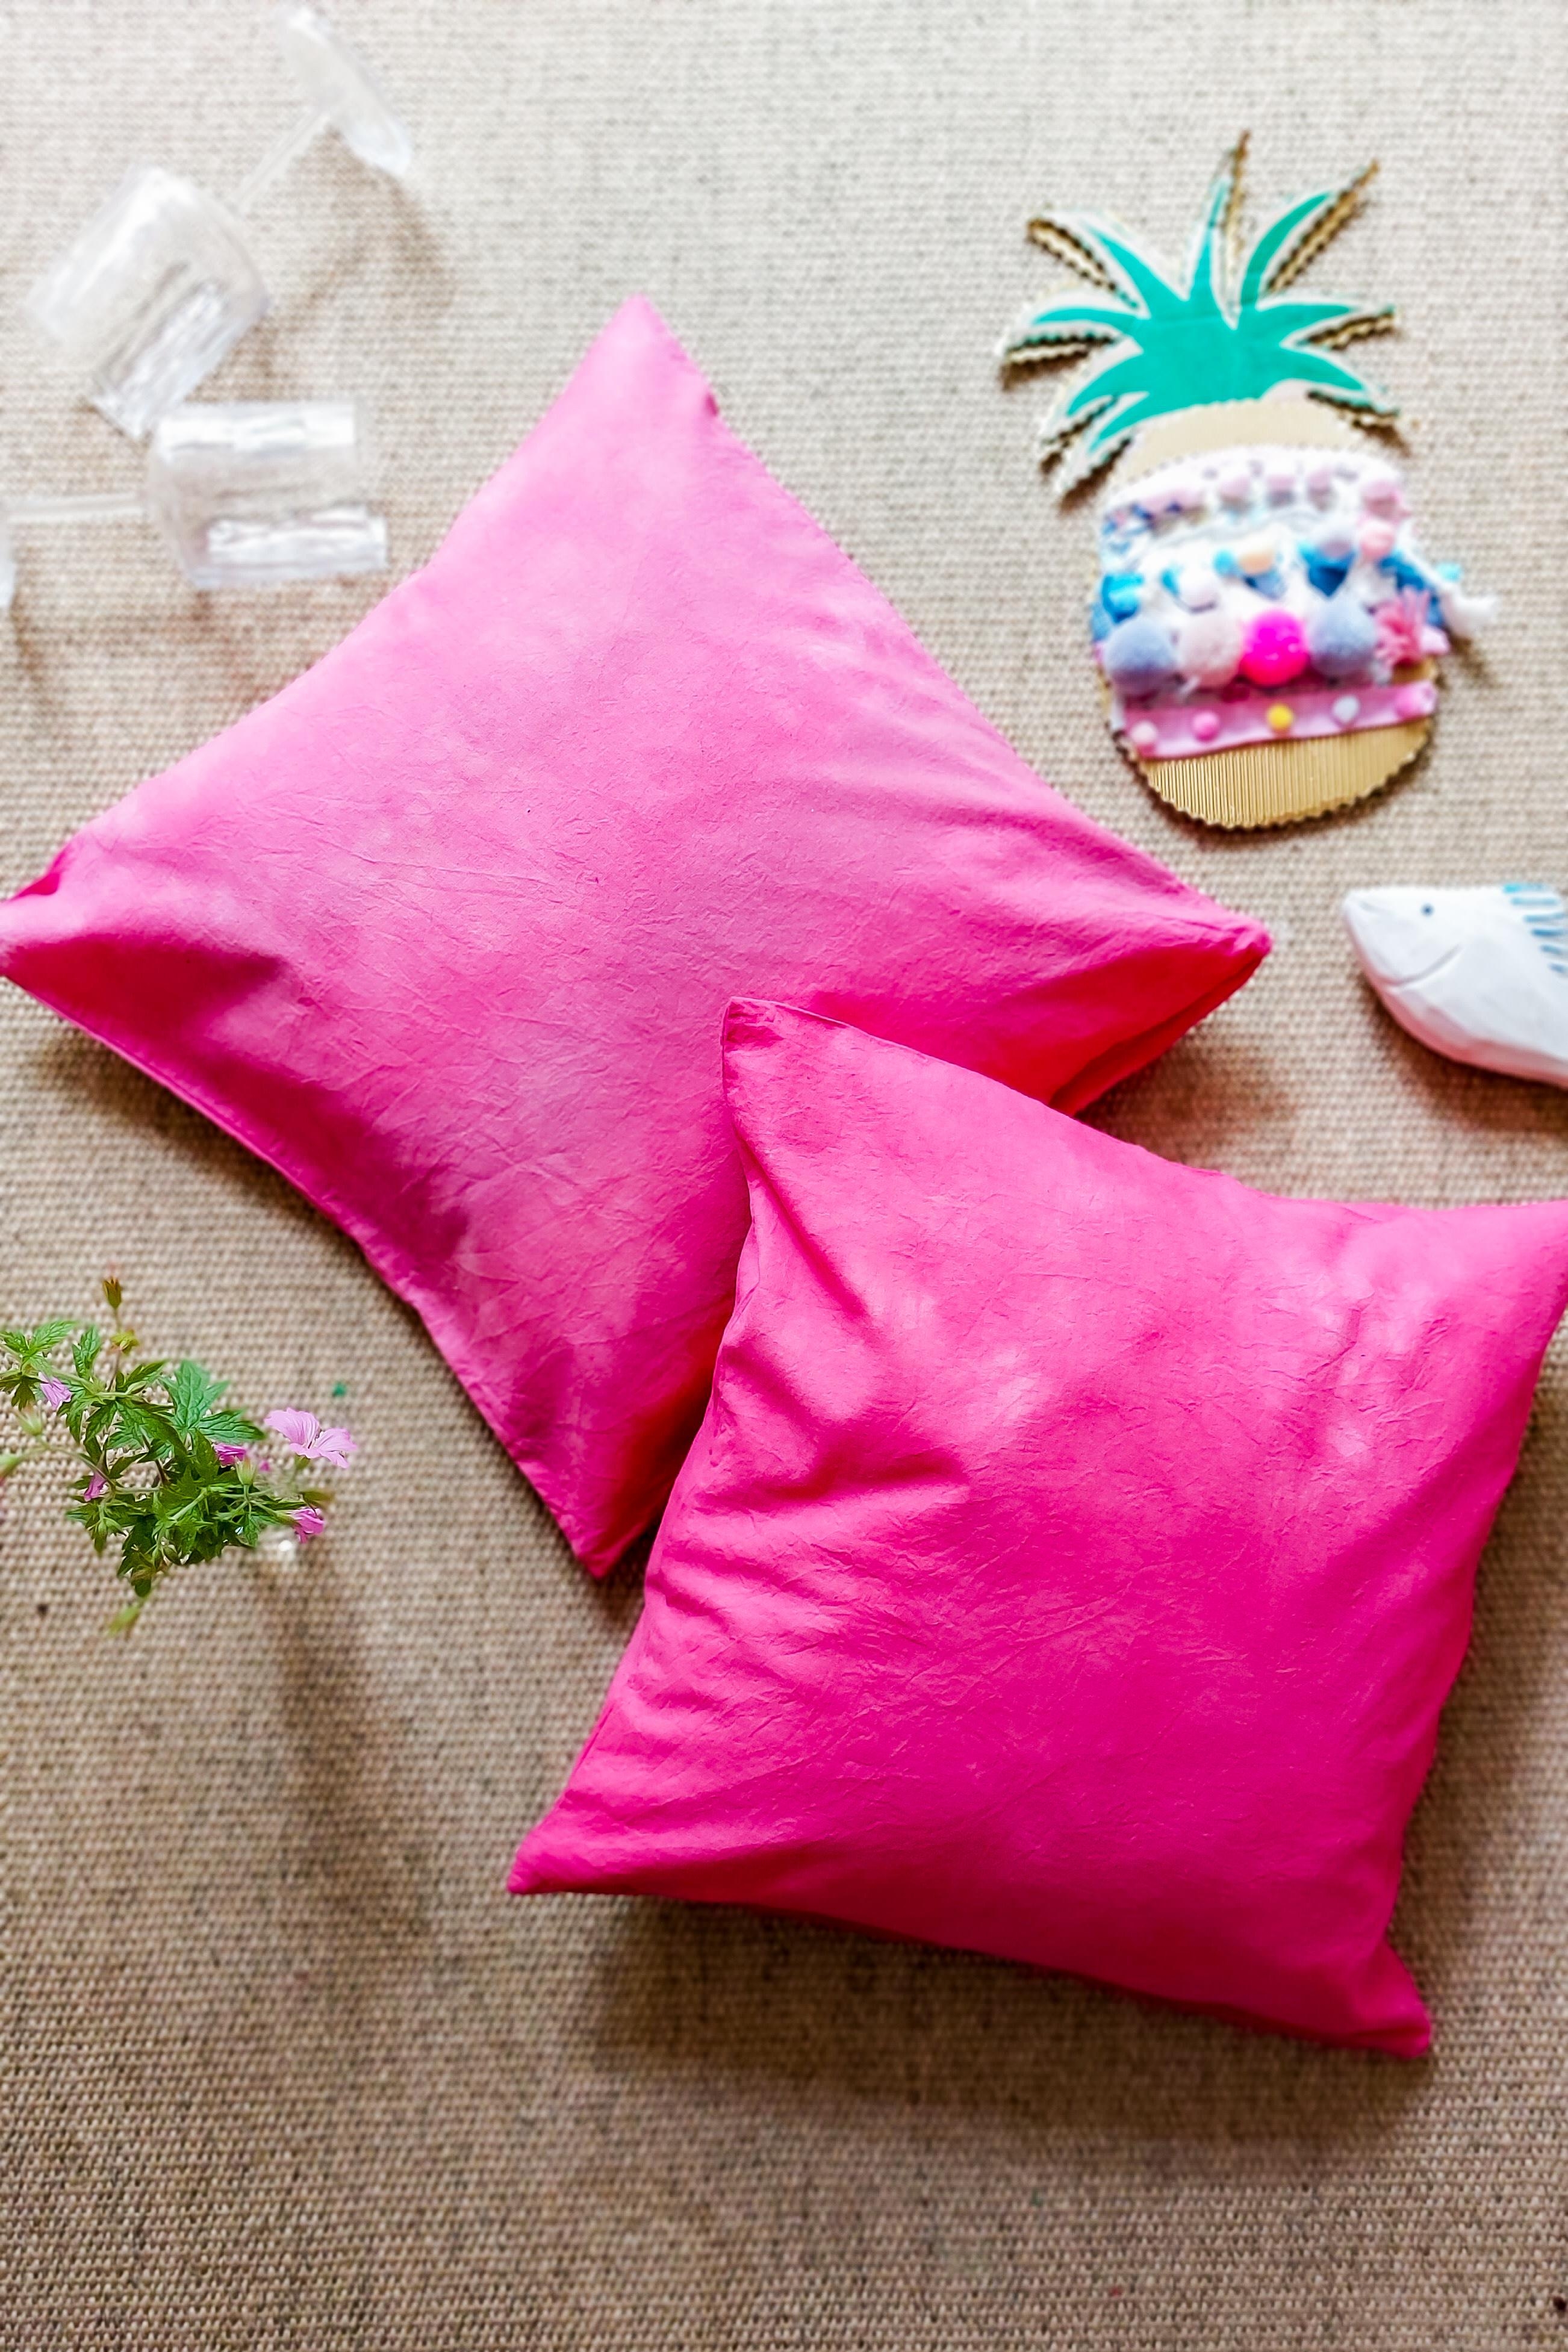 Sommerkissen DIY mit Textilfarben #happysunday #summervibes #beerenfarben 